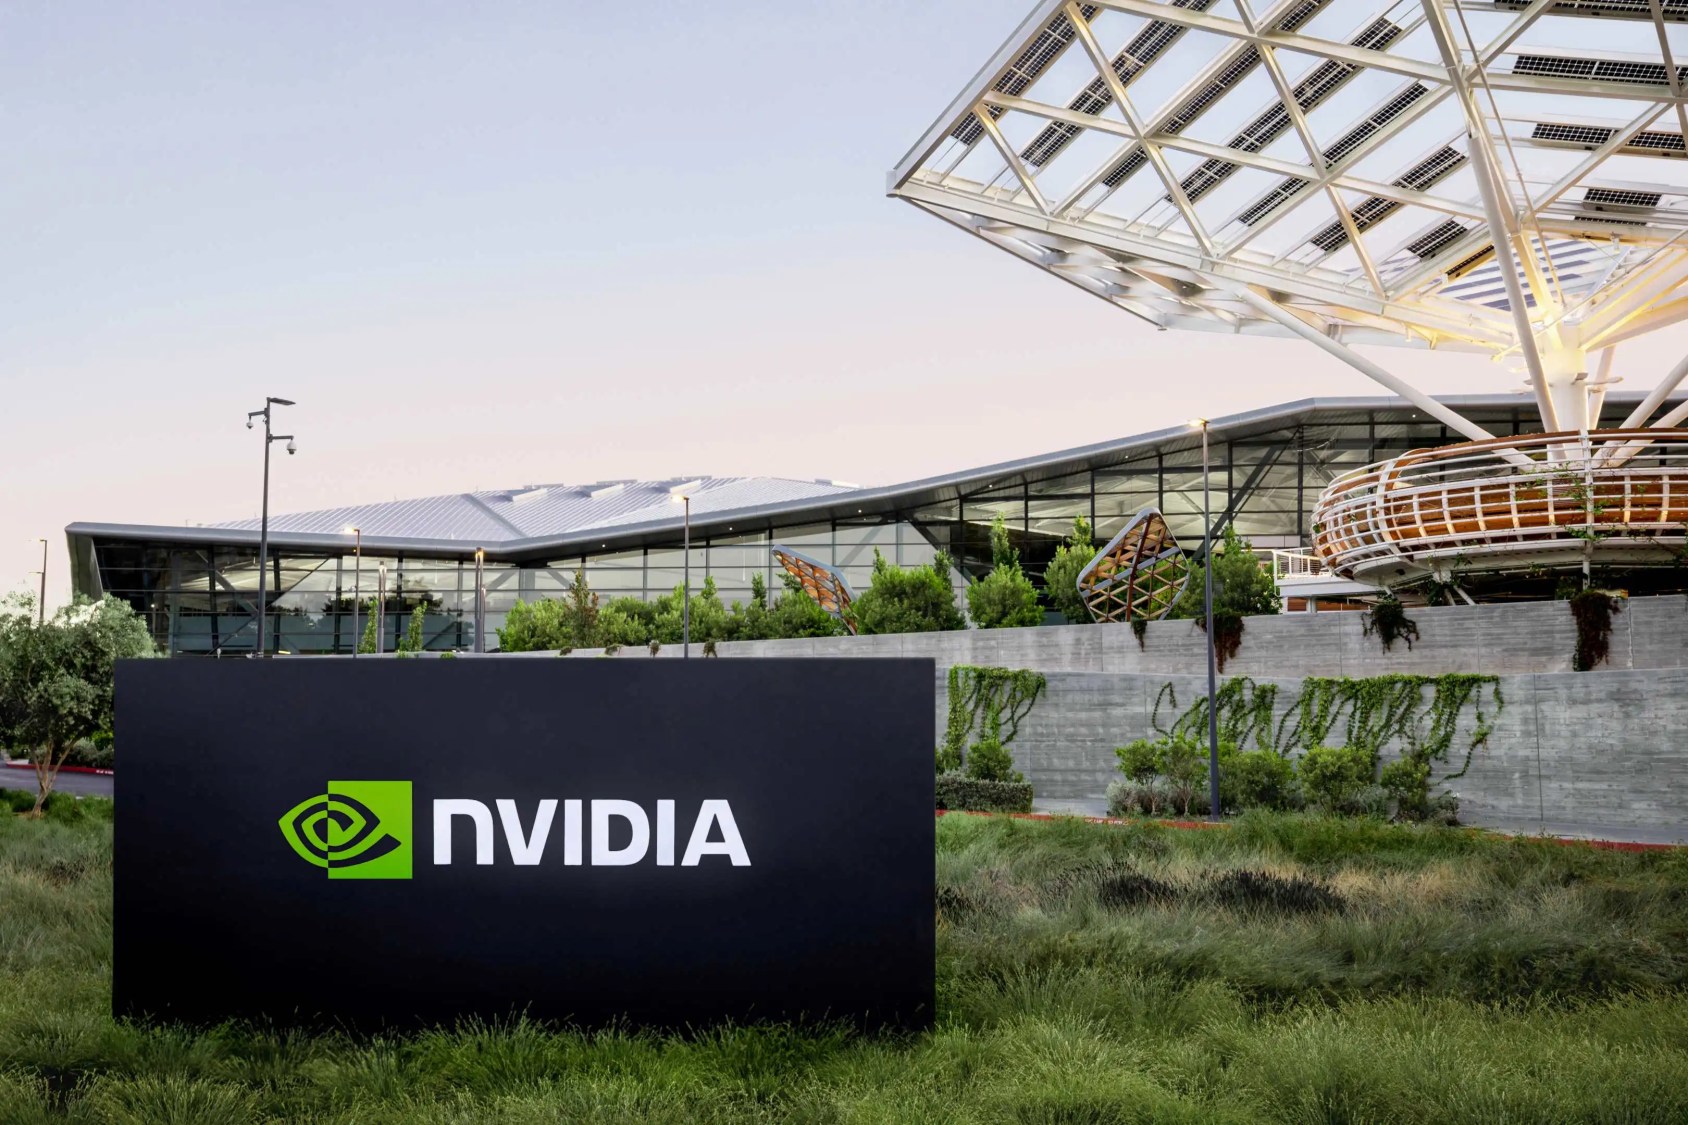 Imagem de uma placa preta em um gramado com o escrito "Nvidia". Atrás, a sede de uma empresa de tecnologia.